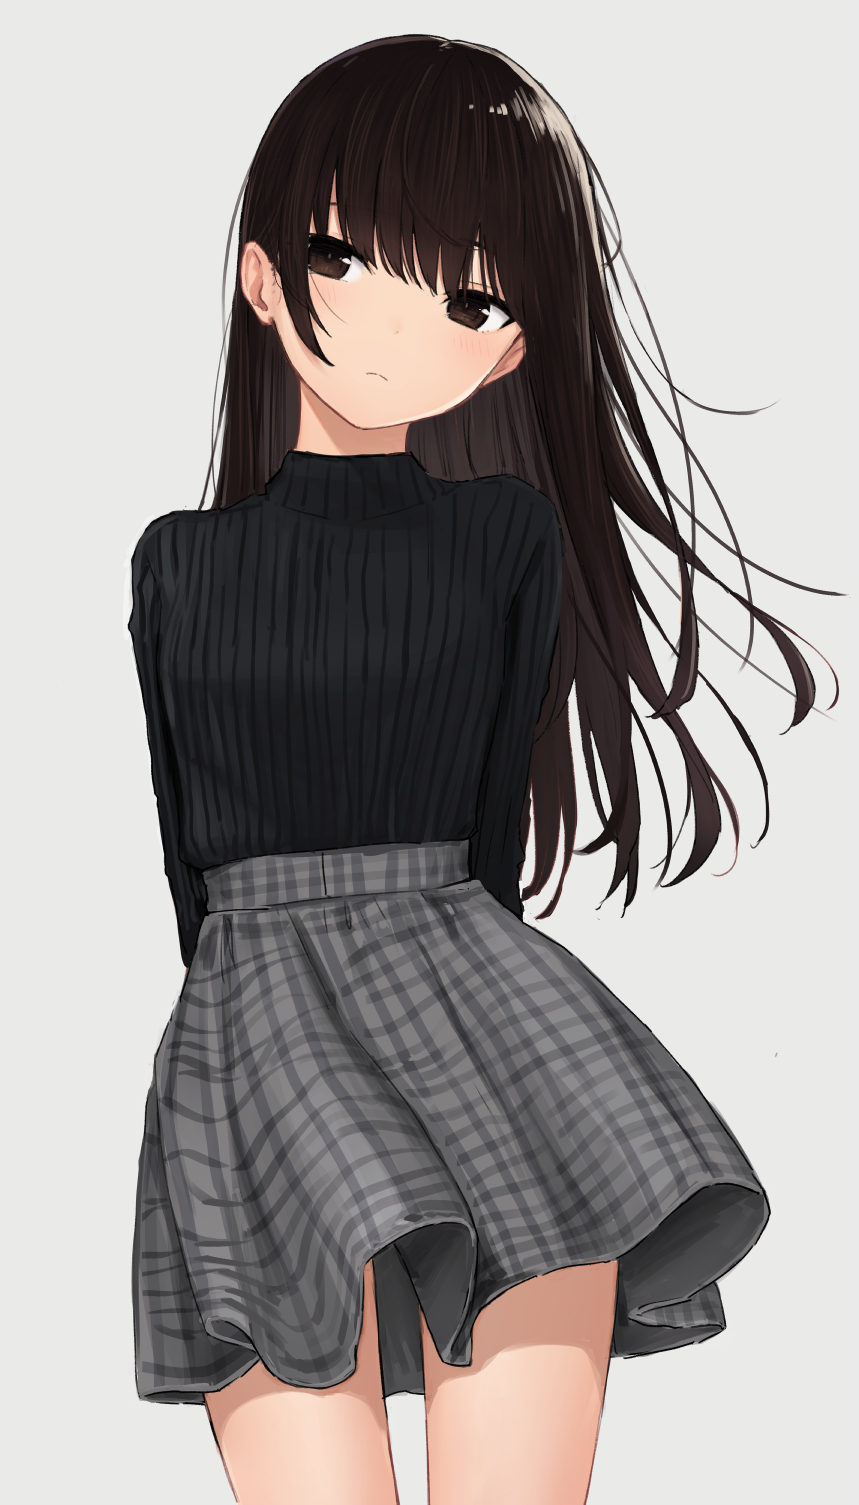 HD wallpaper: anime, anime girls, long hair, sweater, brunette, brown eyes  | Wallpaper Flare